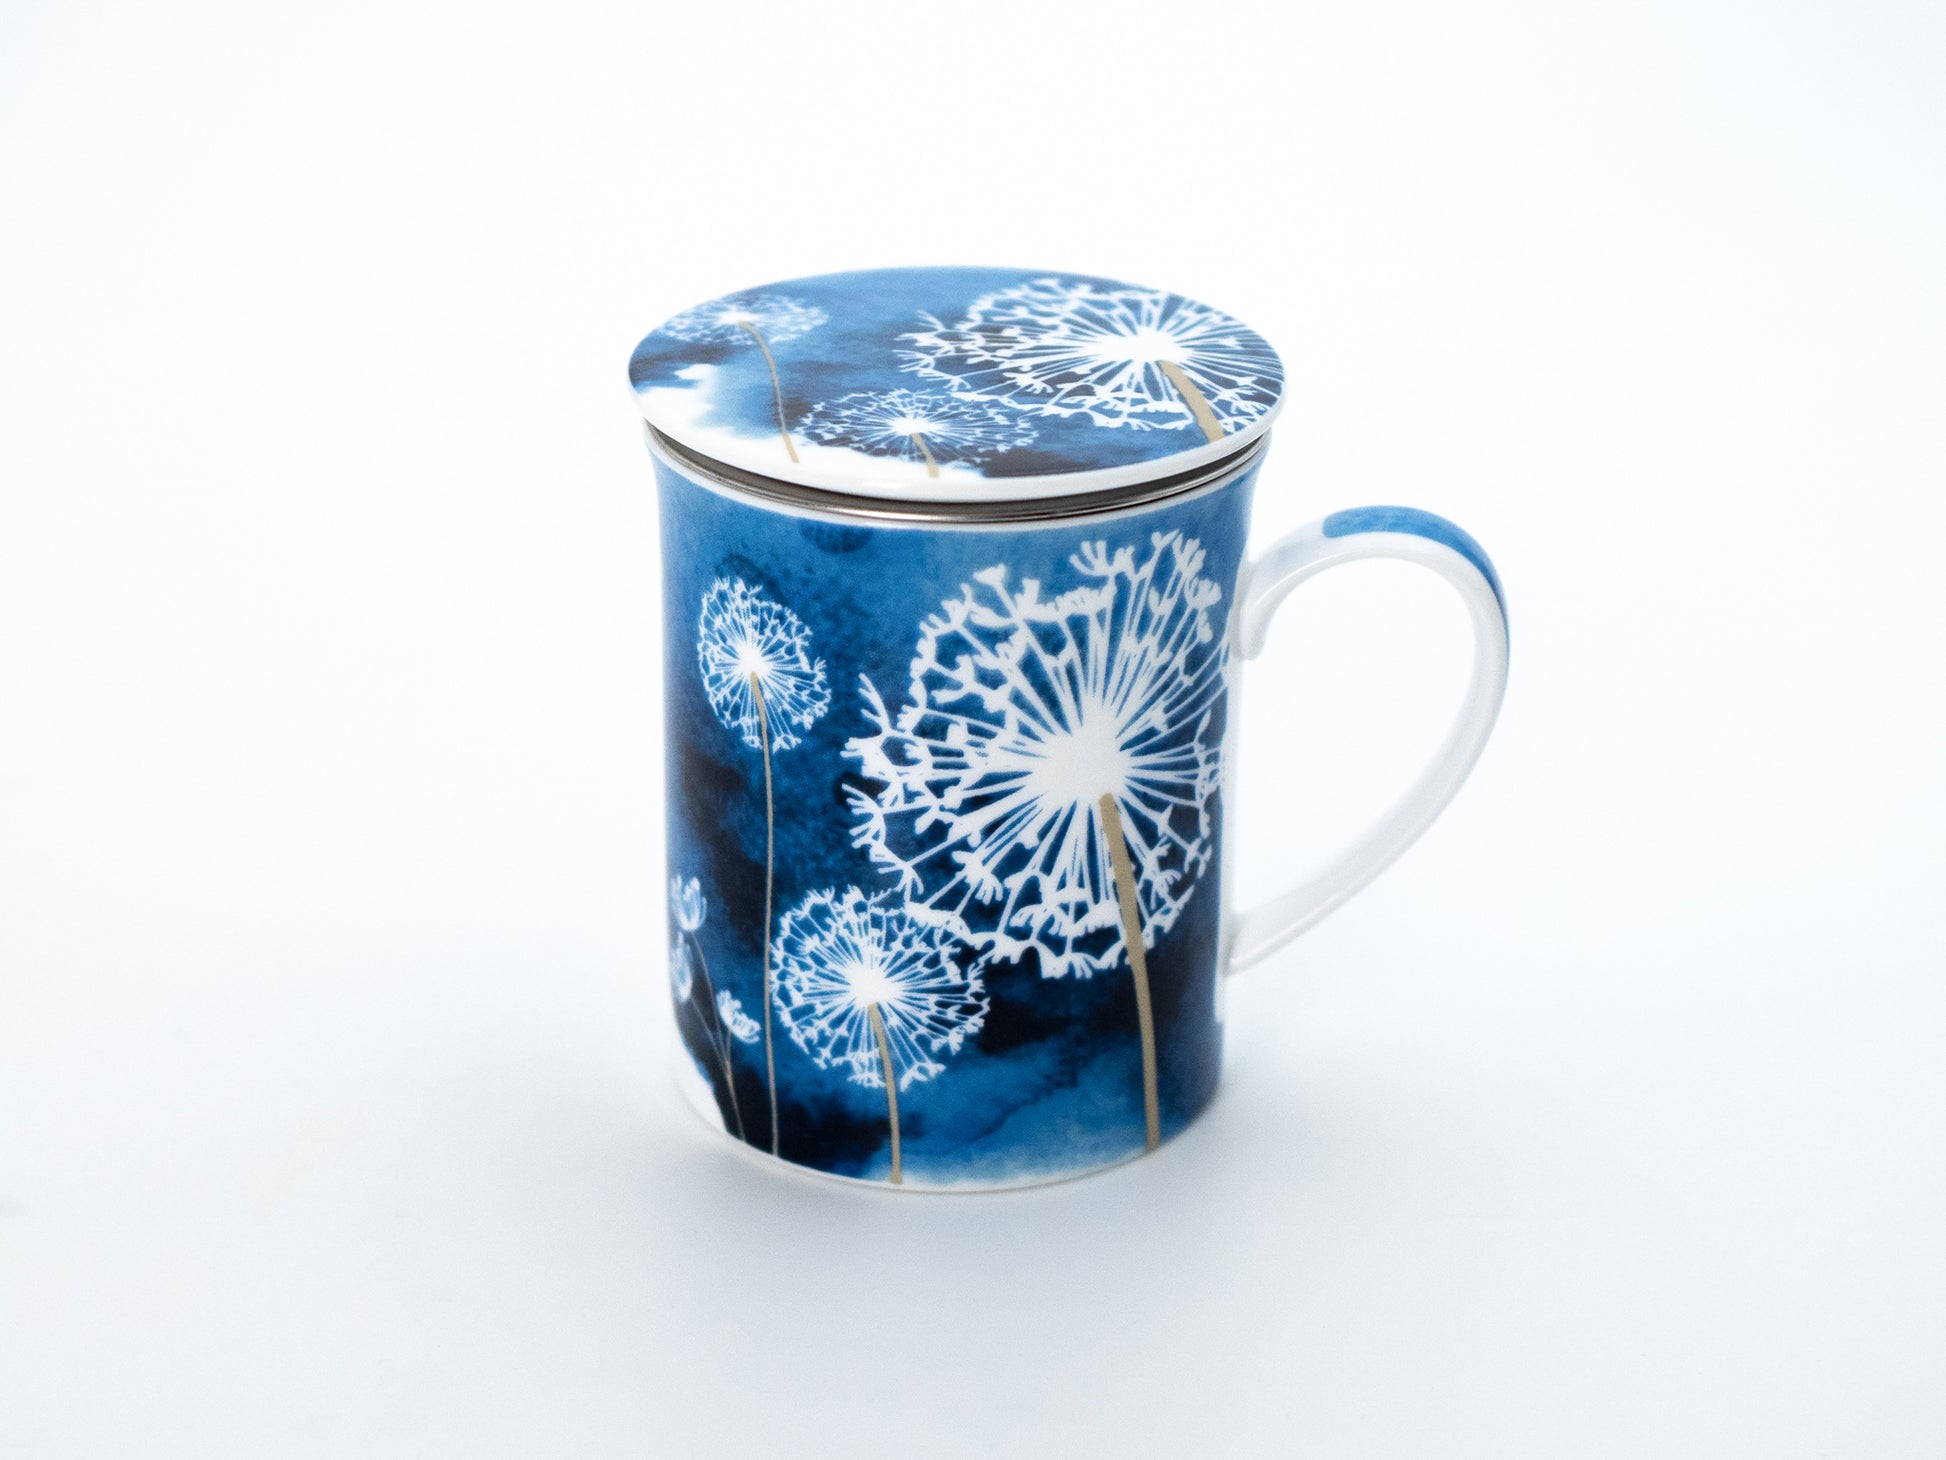 Blue dandelion porcelain infuser mug and lid